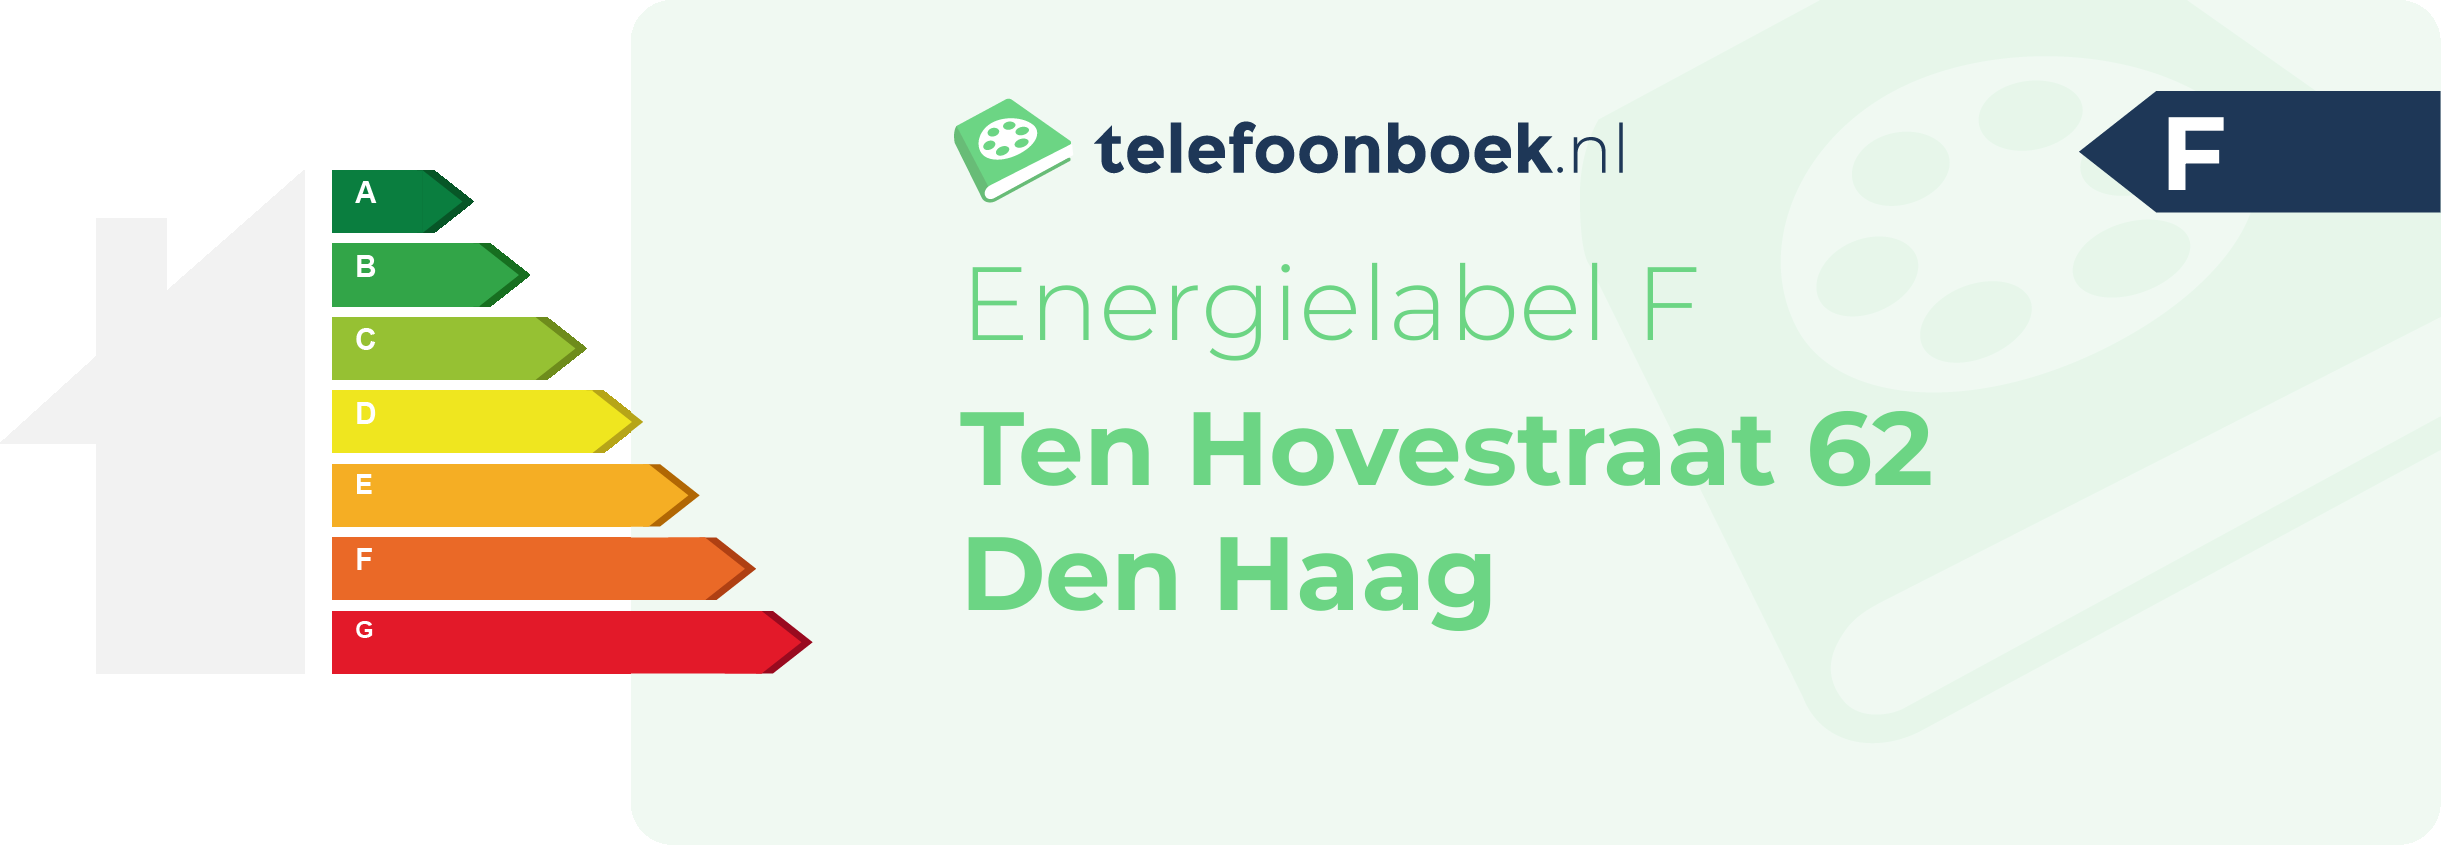 Energielabel Ten Hovestraat 62 Den Haag